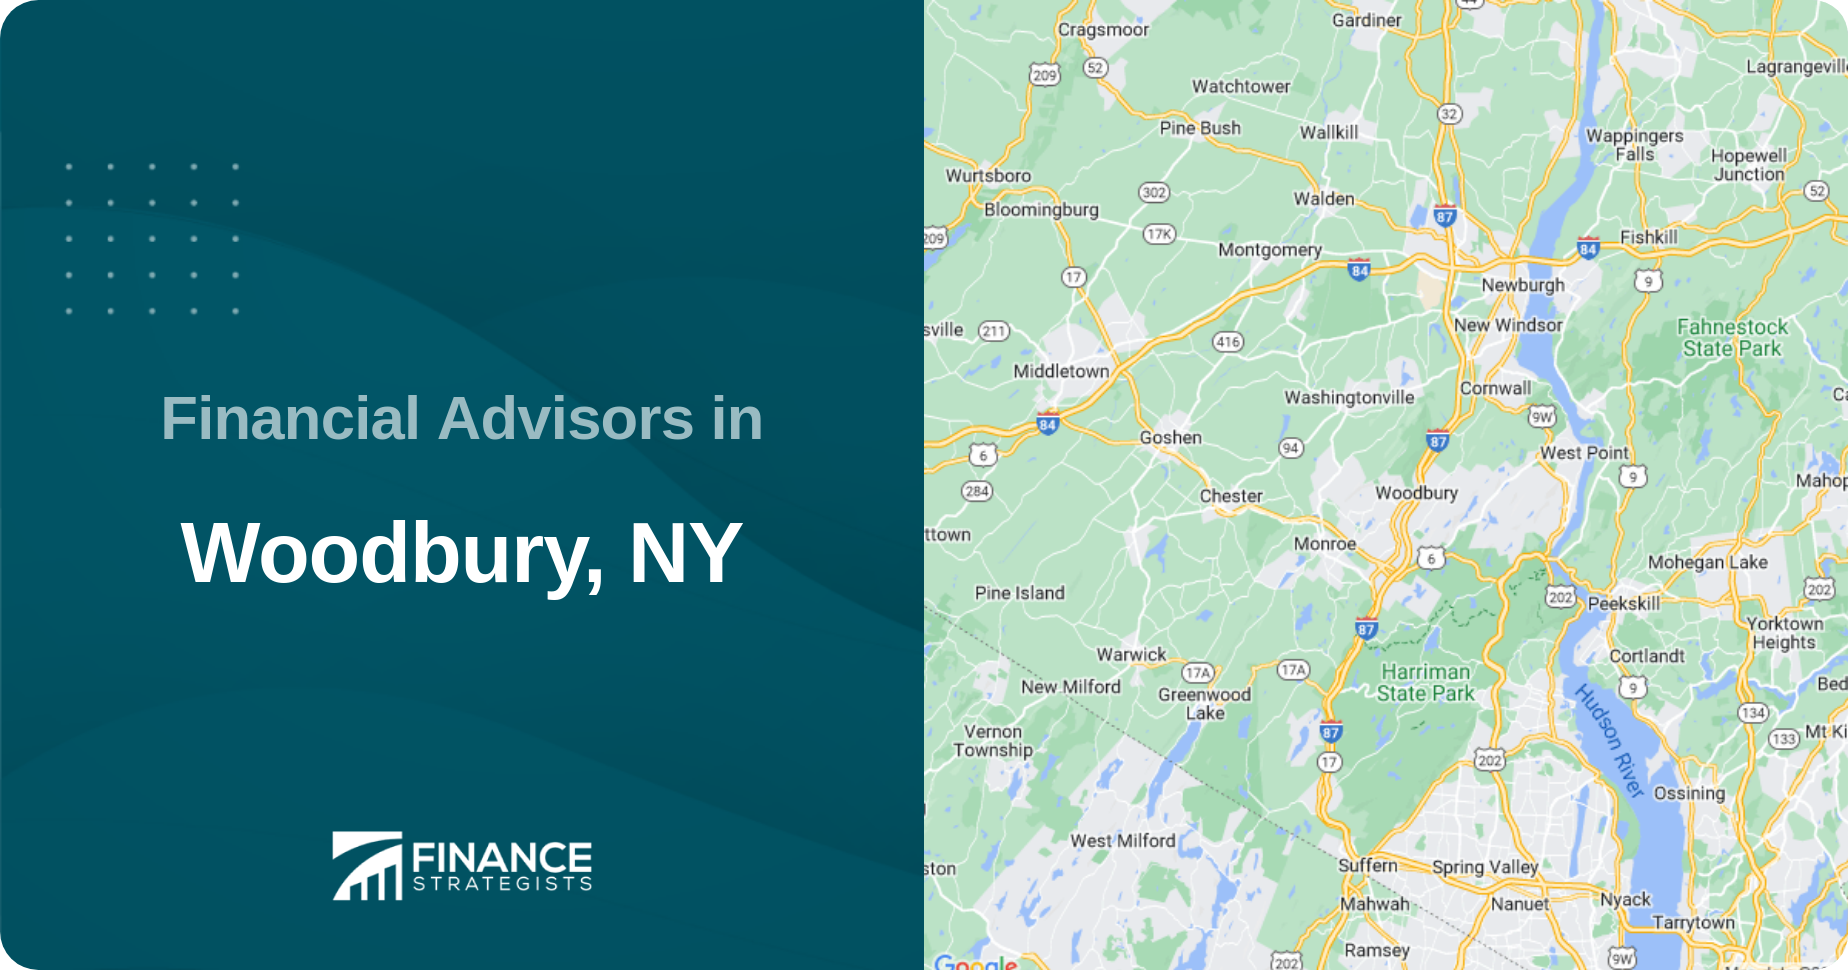 Financial Advisors in Woodbury, NY